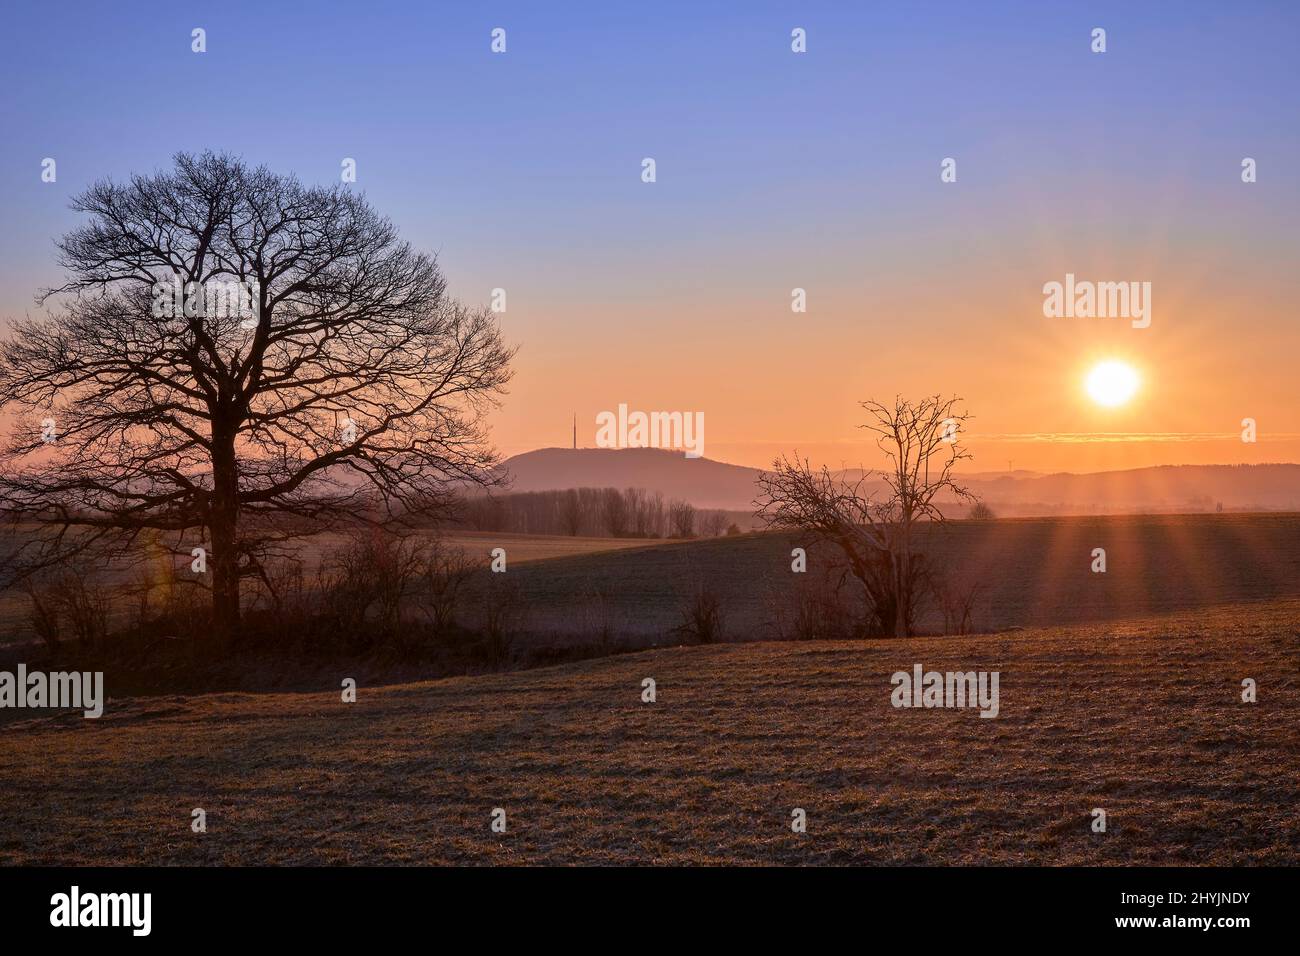 Sonnenaufgang mit Baum auf einem Feld und Berg im Hintergrund Stock Photo